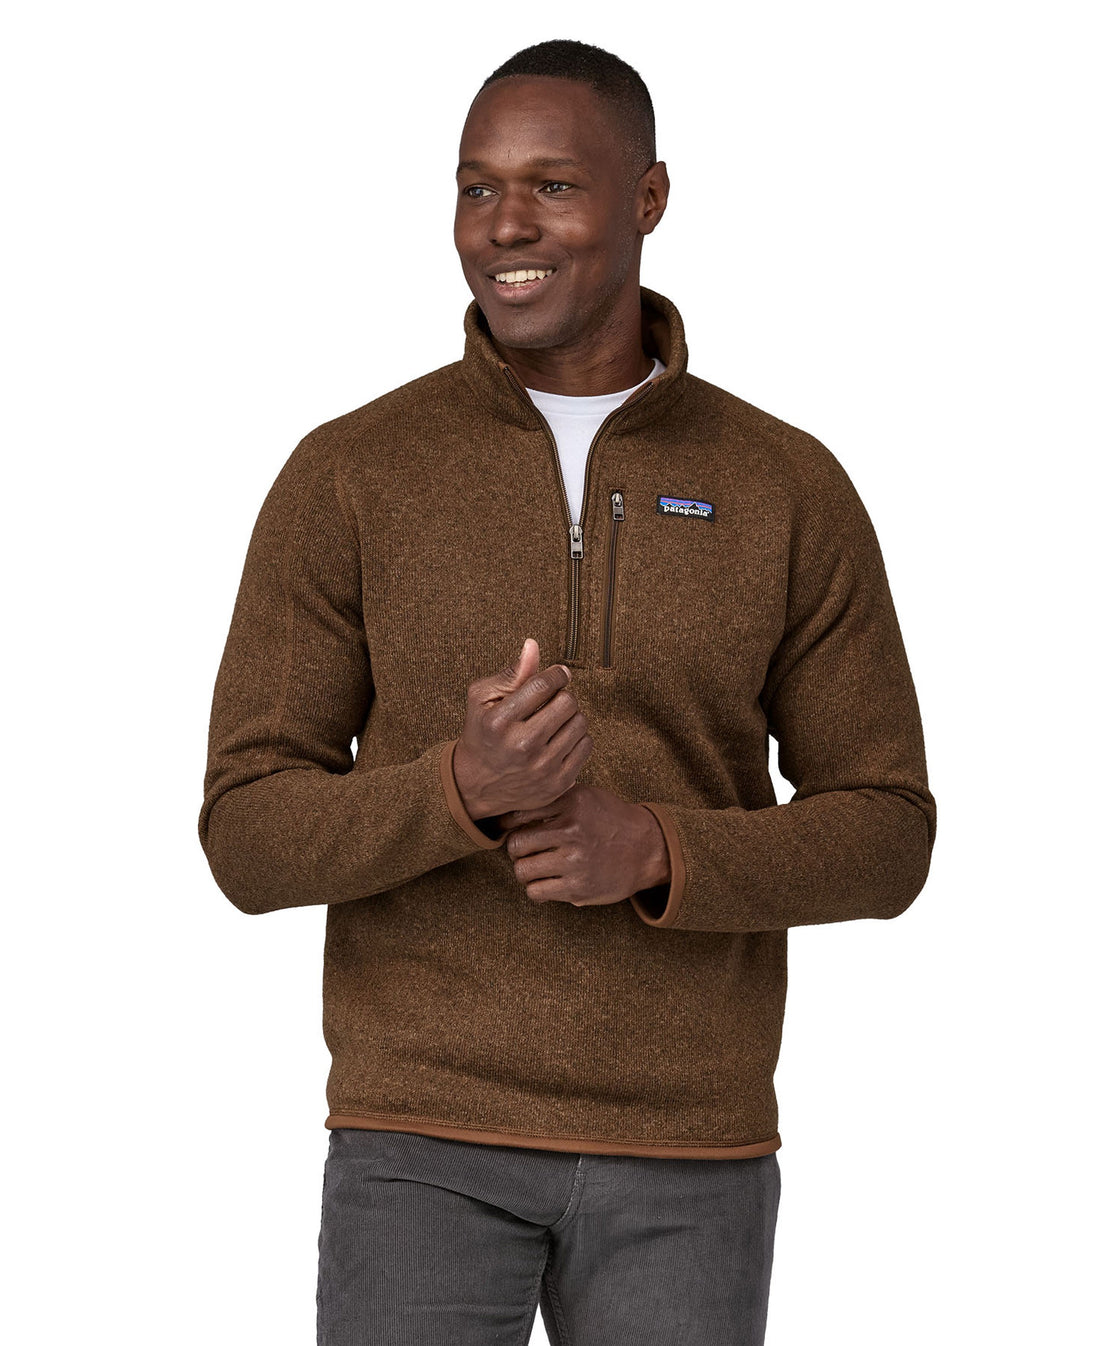 Better Sweater 1/4 Zip Fleece - Moose Brown